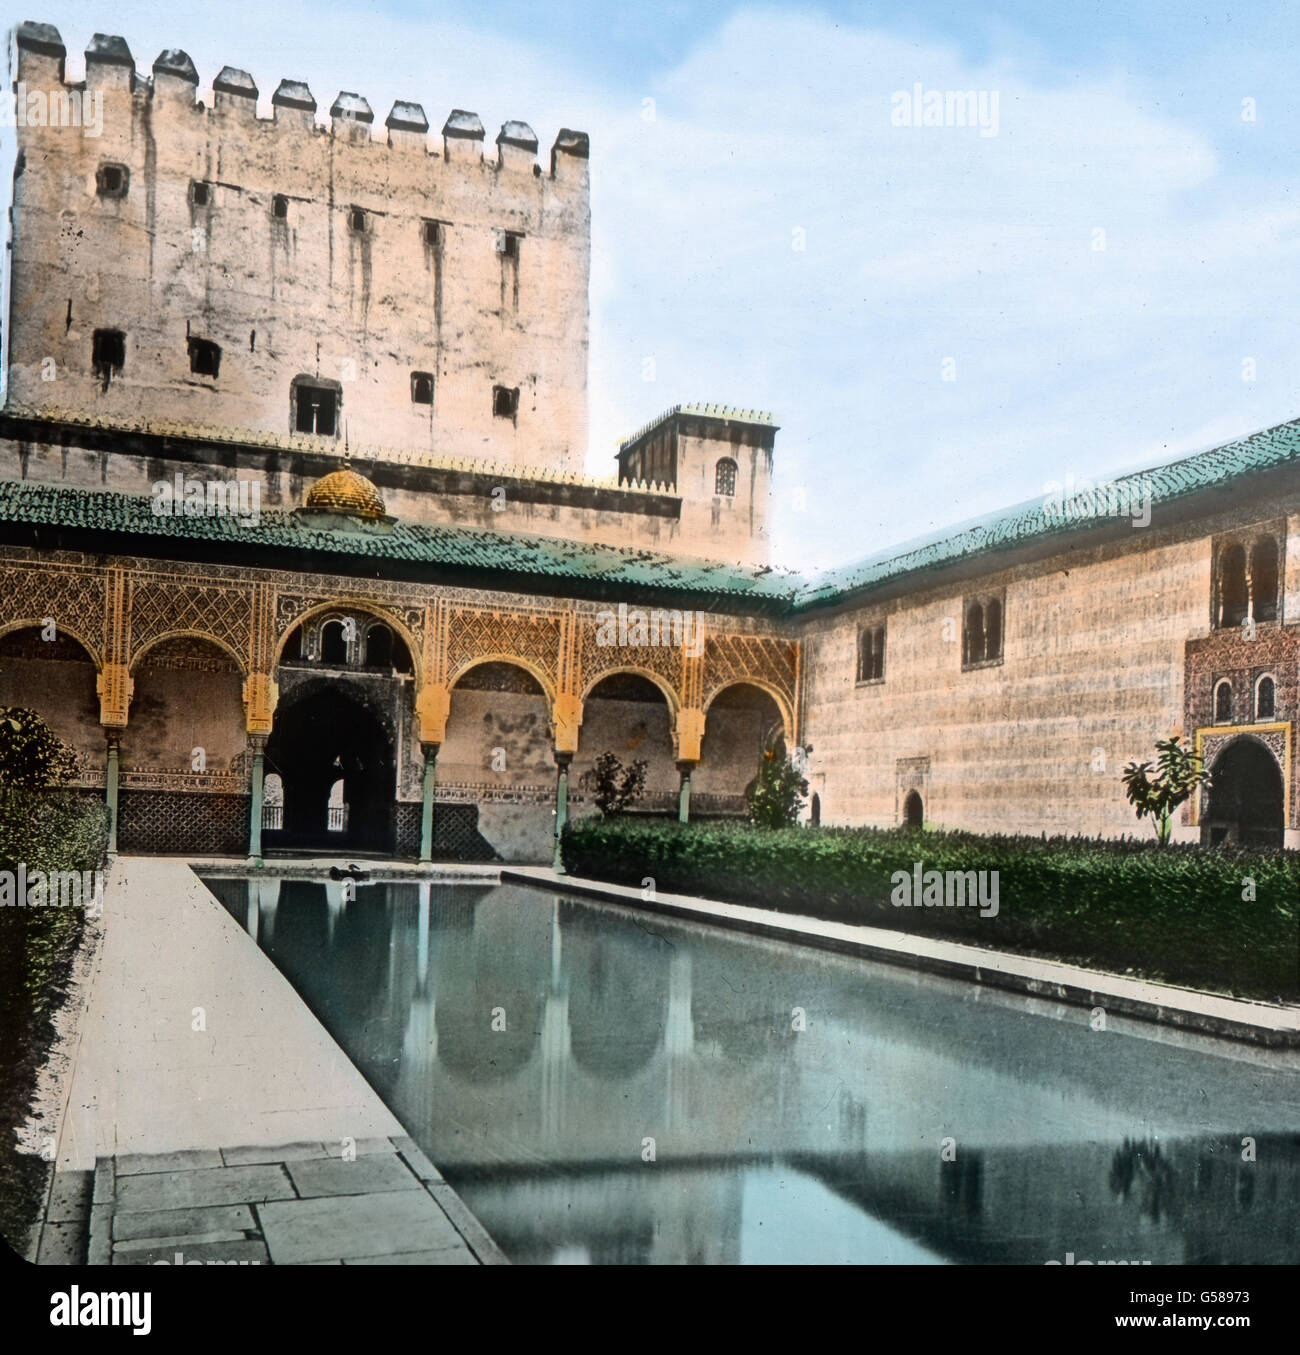 Bei der Alhambra in Granada hat die arabische Baukunst ihren poetischsten Ausdruck gefunden, diese Kunst, die nicht im eigentlichen Sinne konstruktiv, sondern vielmehr dekorativ, schmückend, ist. Wir sehen hier den sogenannten Myrtenhof. Unter Zuhilfenahme einer mathematisch abgegrenzten Wasserfläche und zweier Grünstreifen von Buschwerk ist eine Leistung entstanden, die man im besten Sinne als poetisch bezeichnen kann. Aber das ist auch wieder erst eine einleitende Vorbereitung. Europe, Spain, travel, Andalusia, Granada, Alhambra, Moorish Palace, Court of the Myrtles, Patio de los Arrayanes,1 Stock Photo